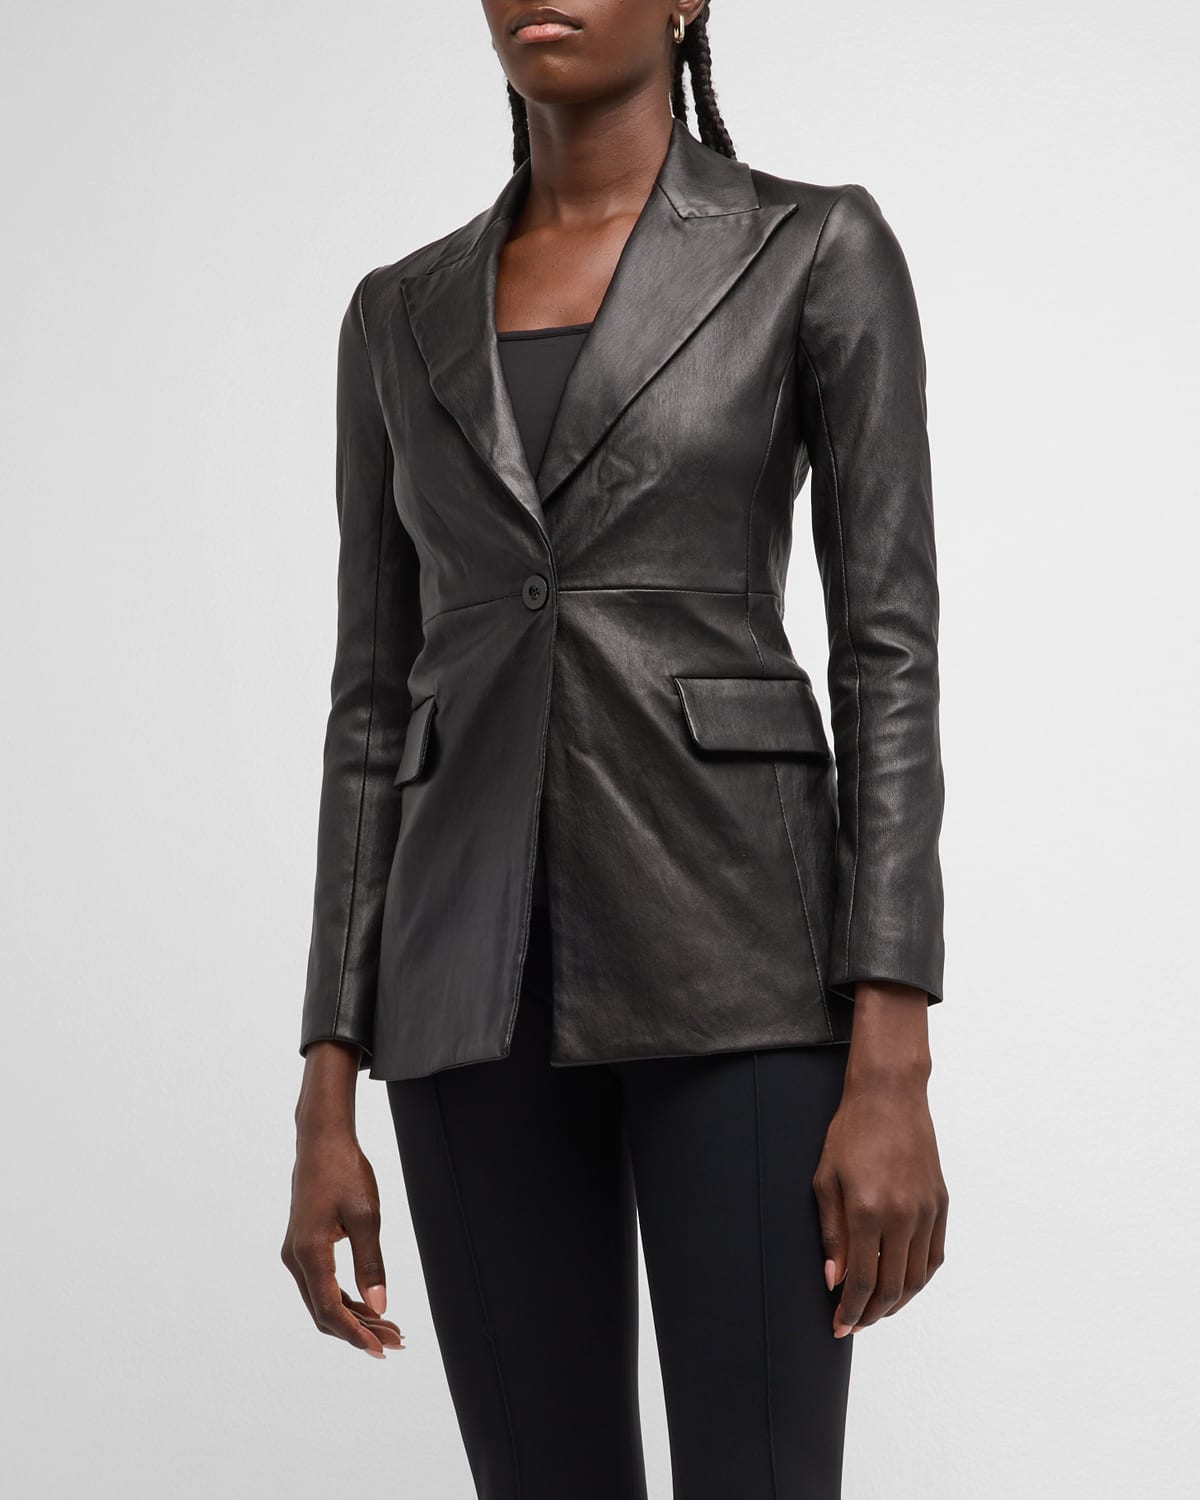 Leather Single-Breasted Blazer Jacket